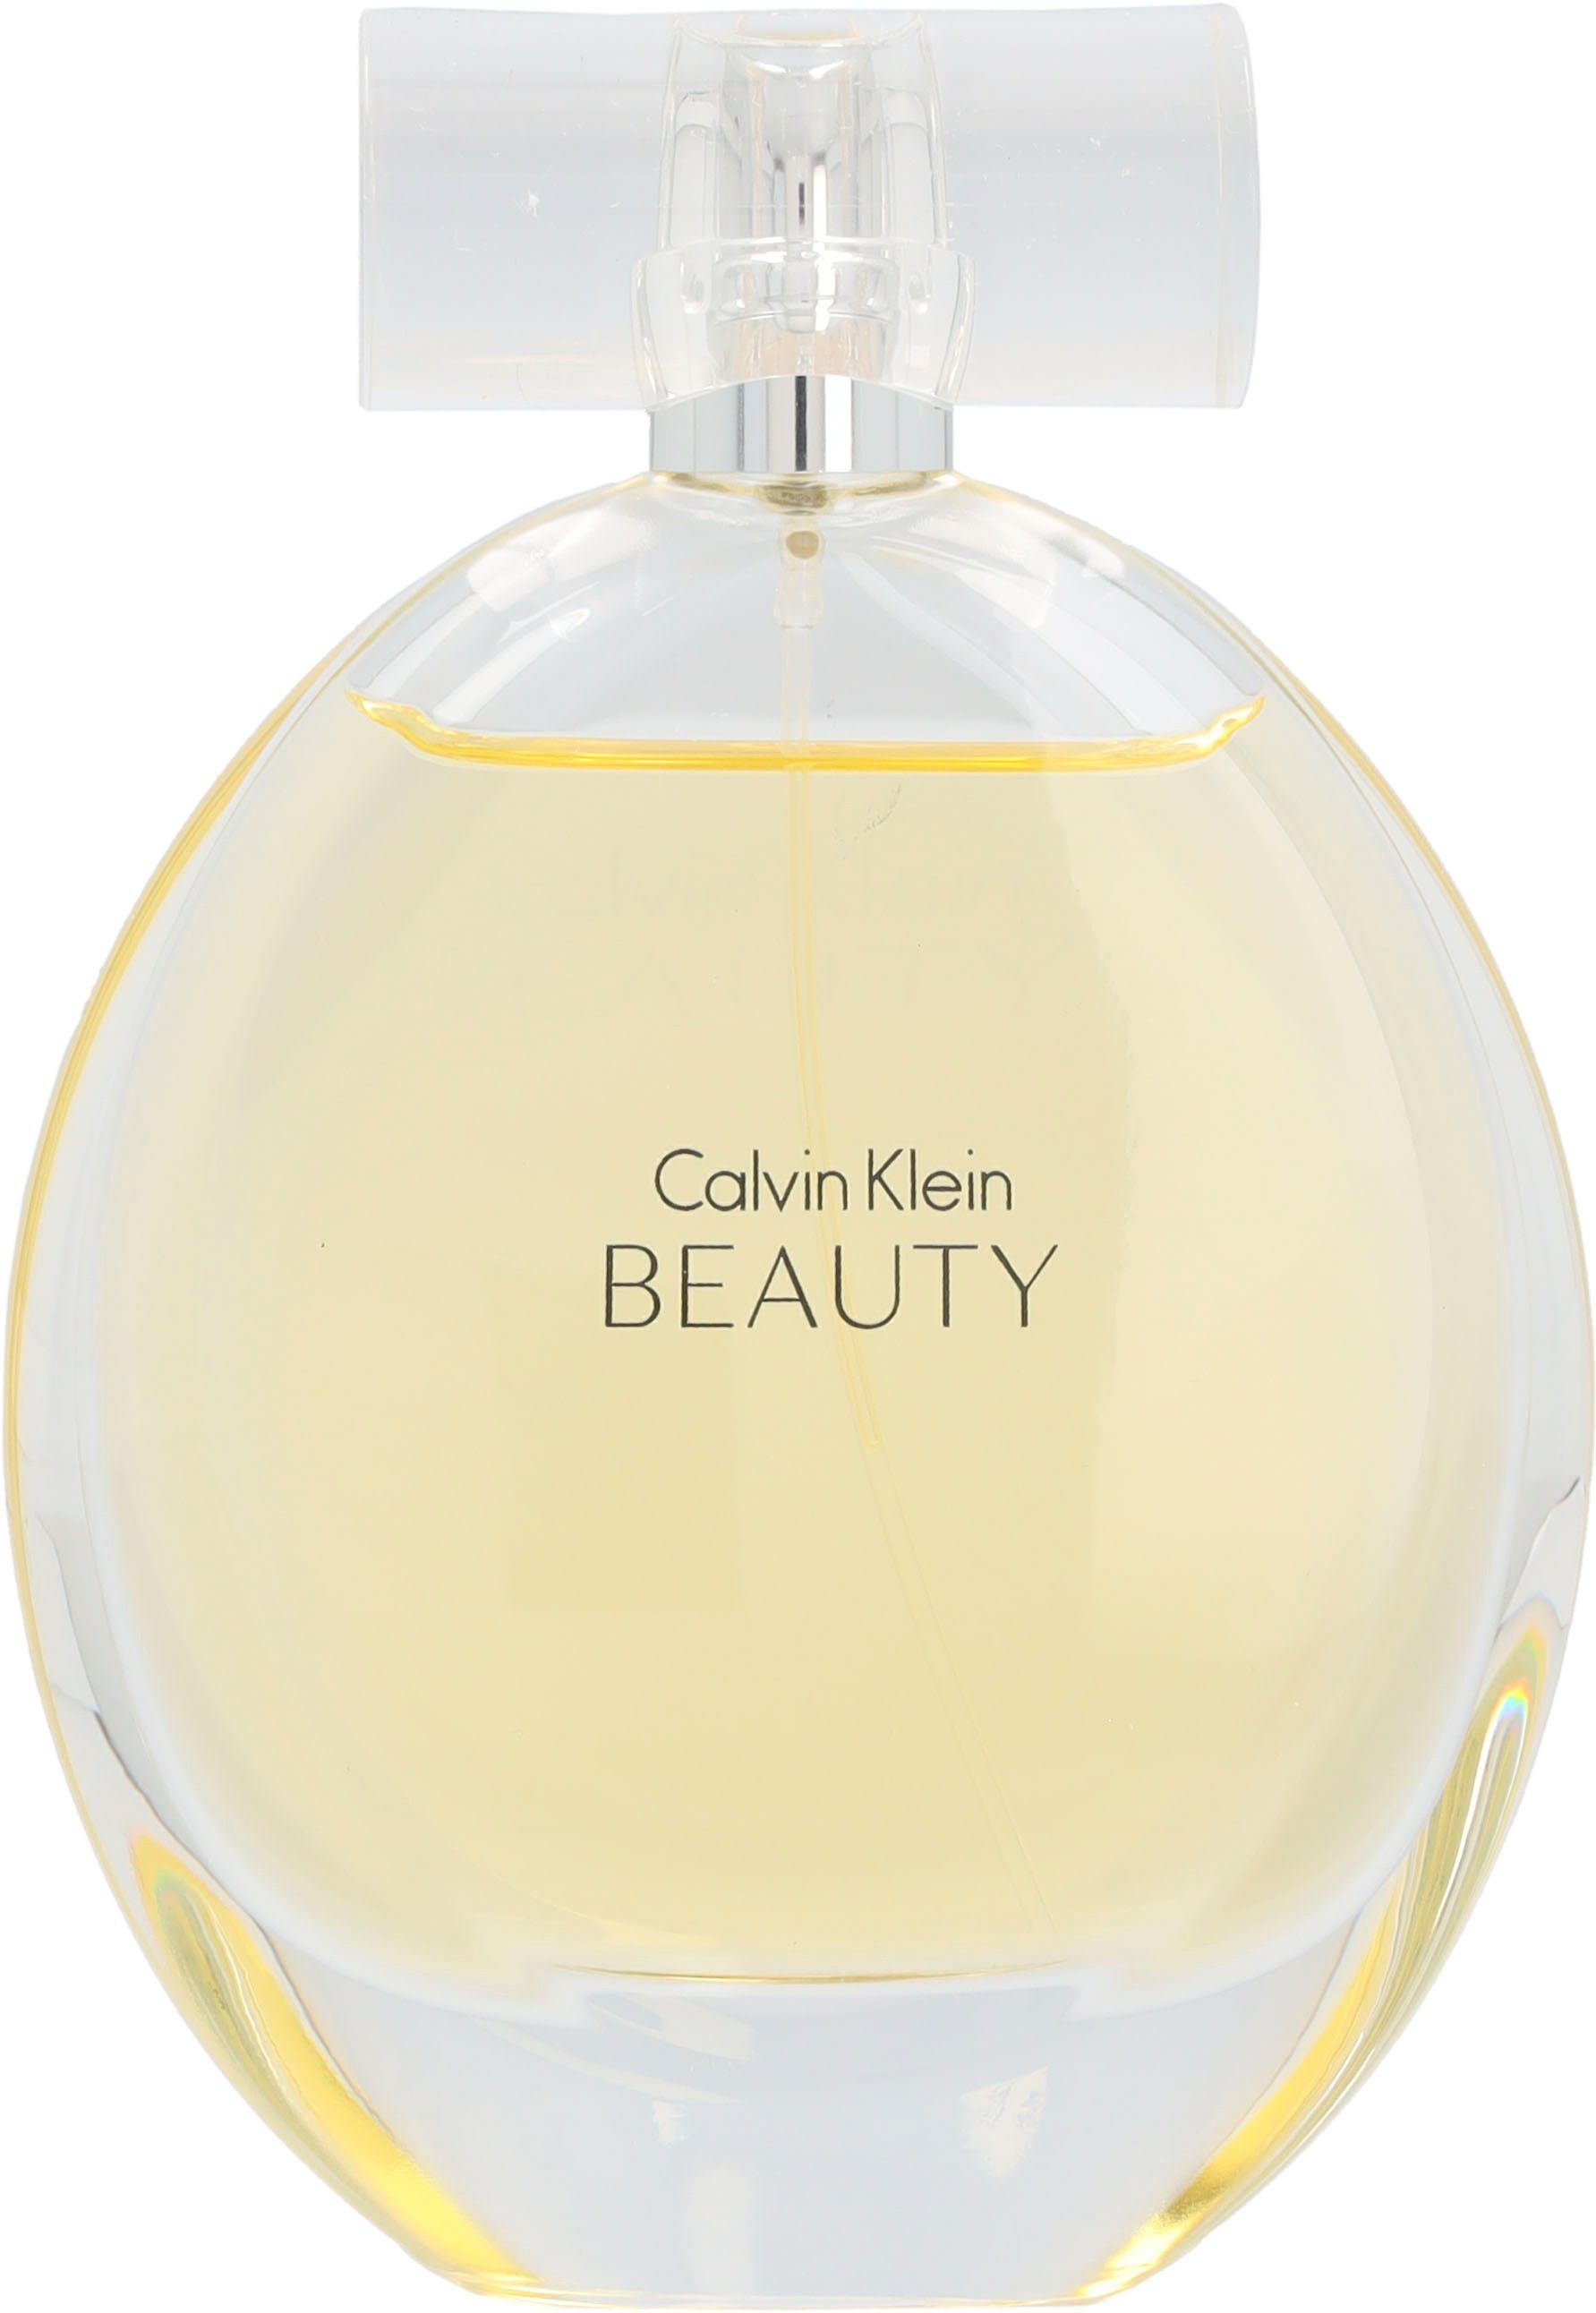 Klein Beauty Eau Calvin Parfum de